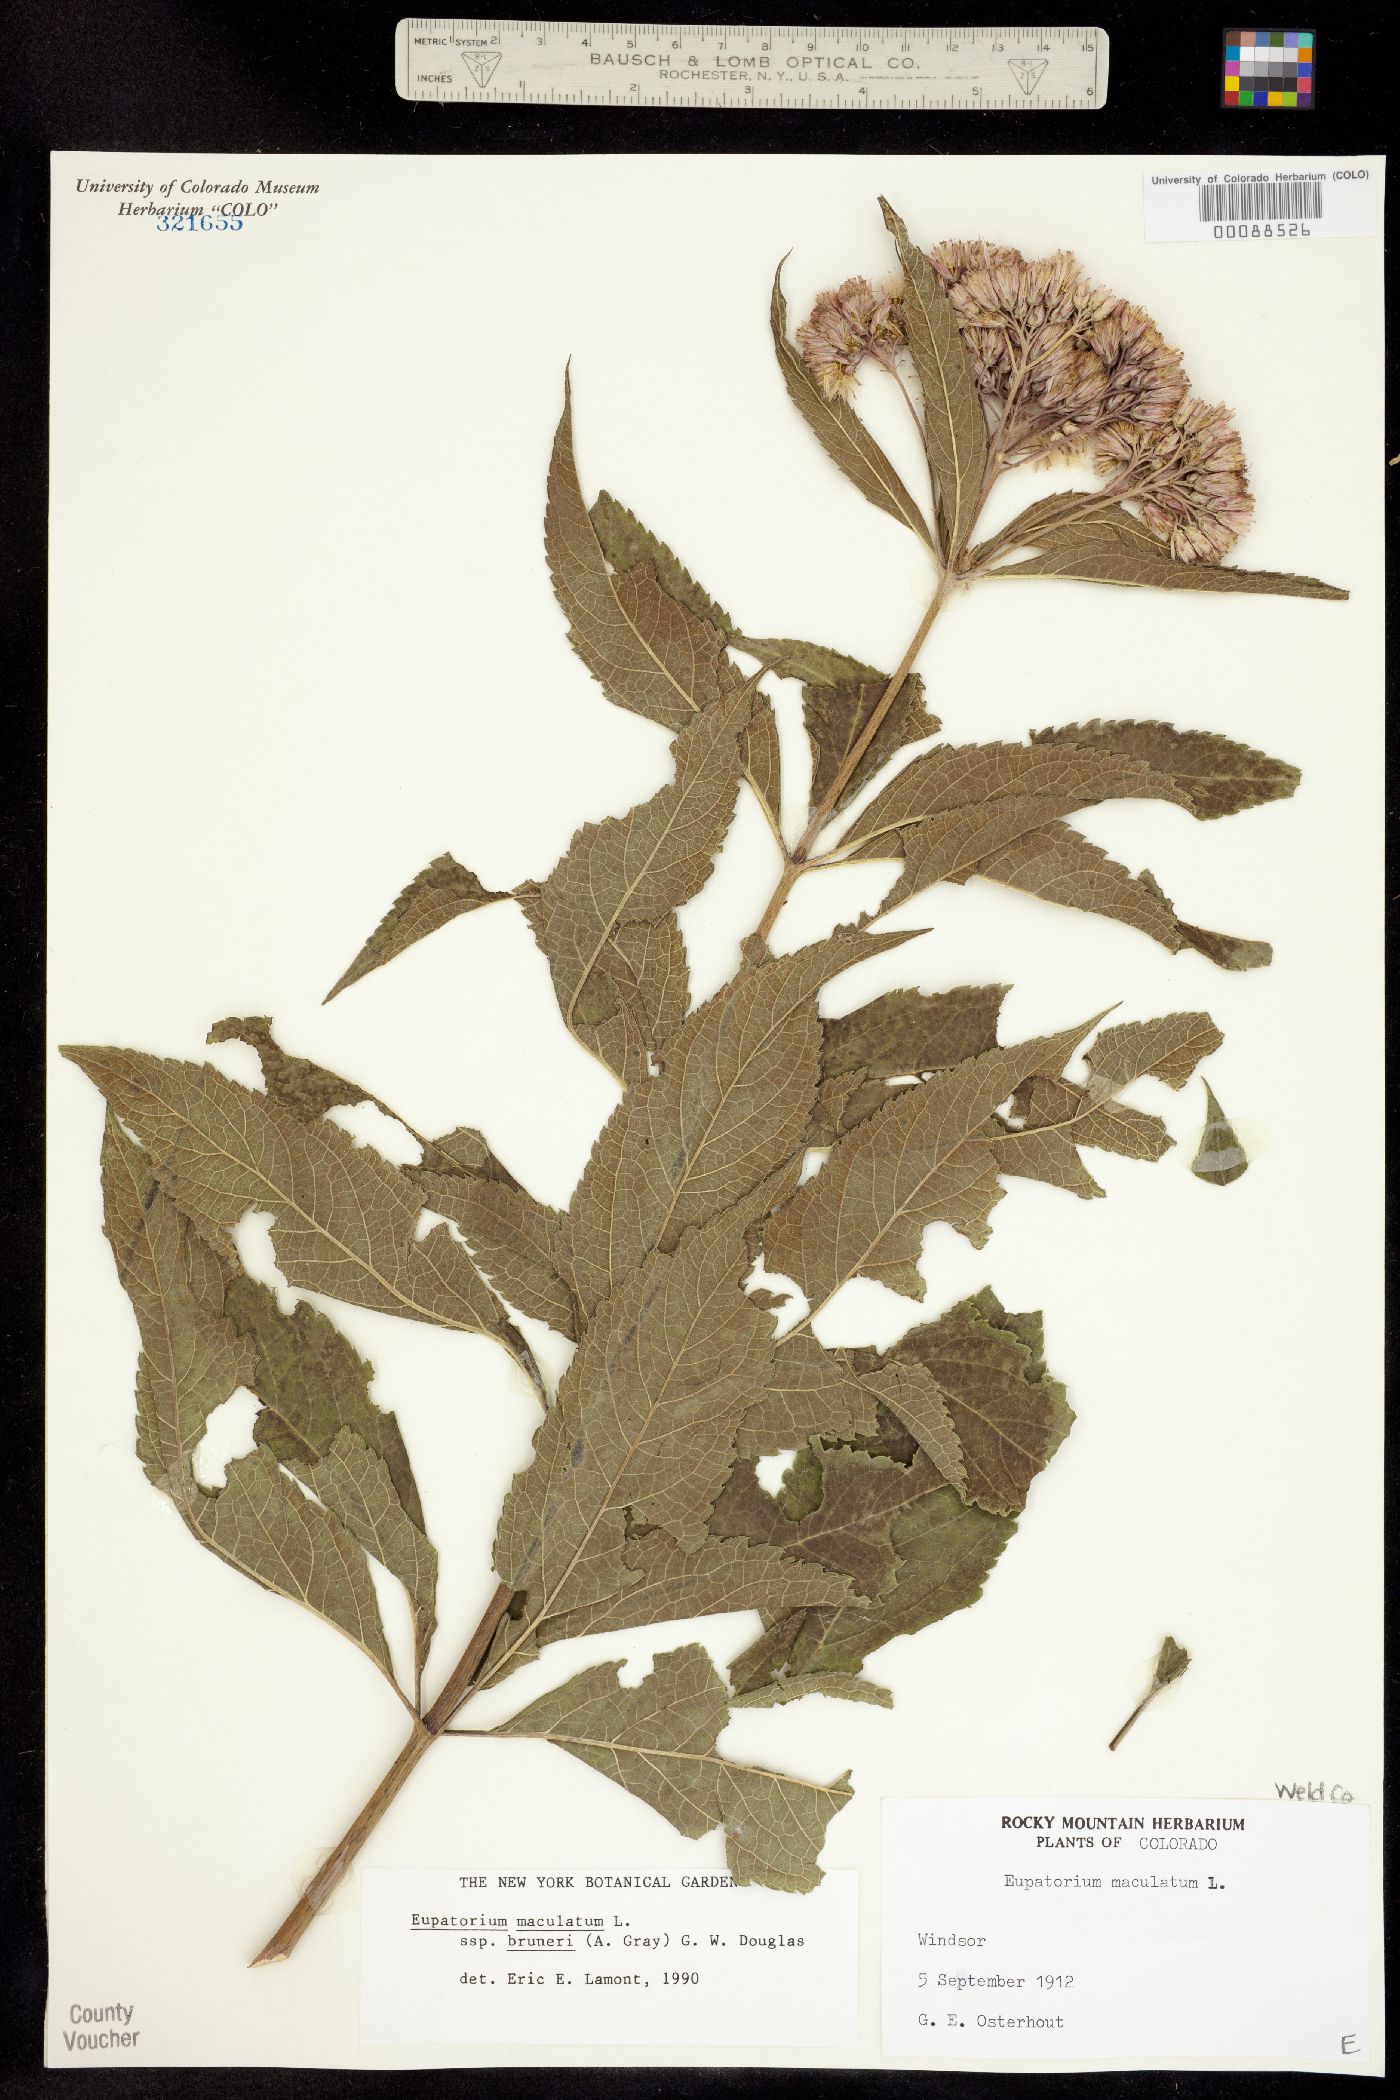 Eupatorium maculatum ssp. bruneri image